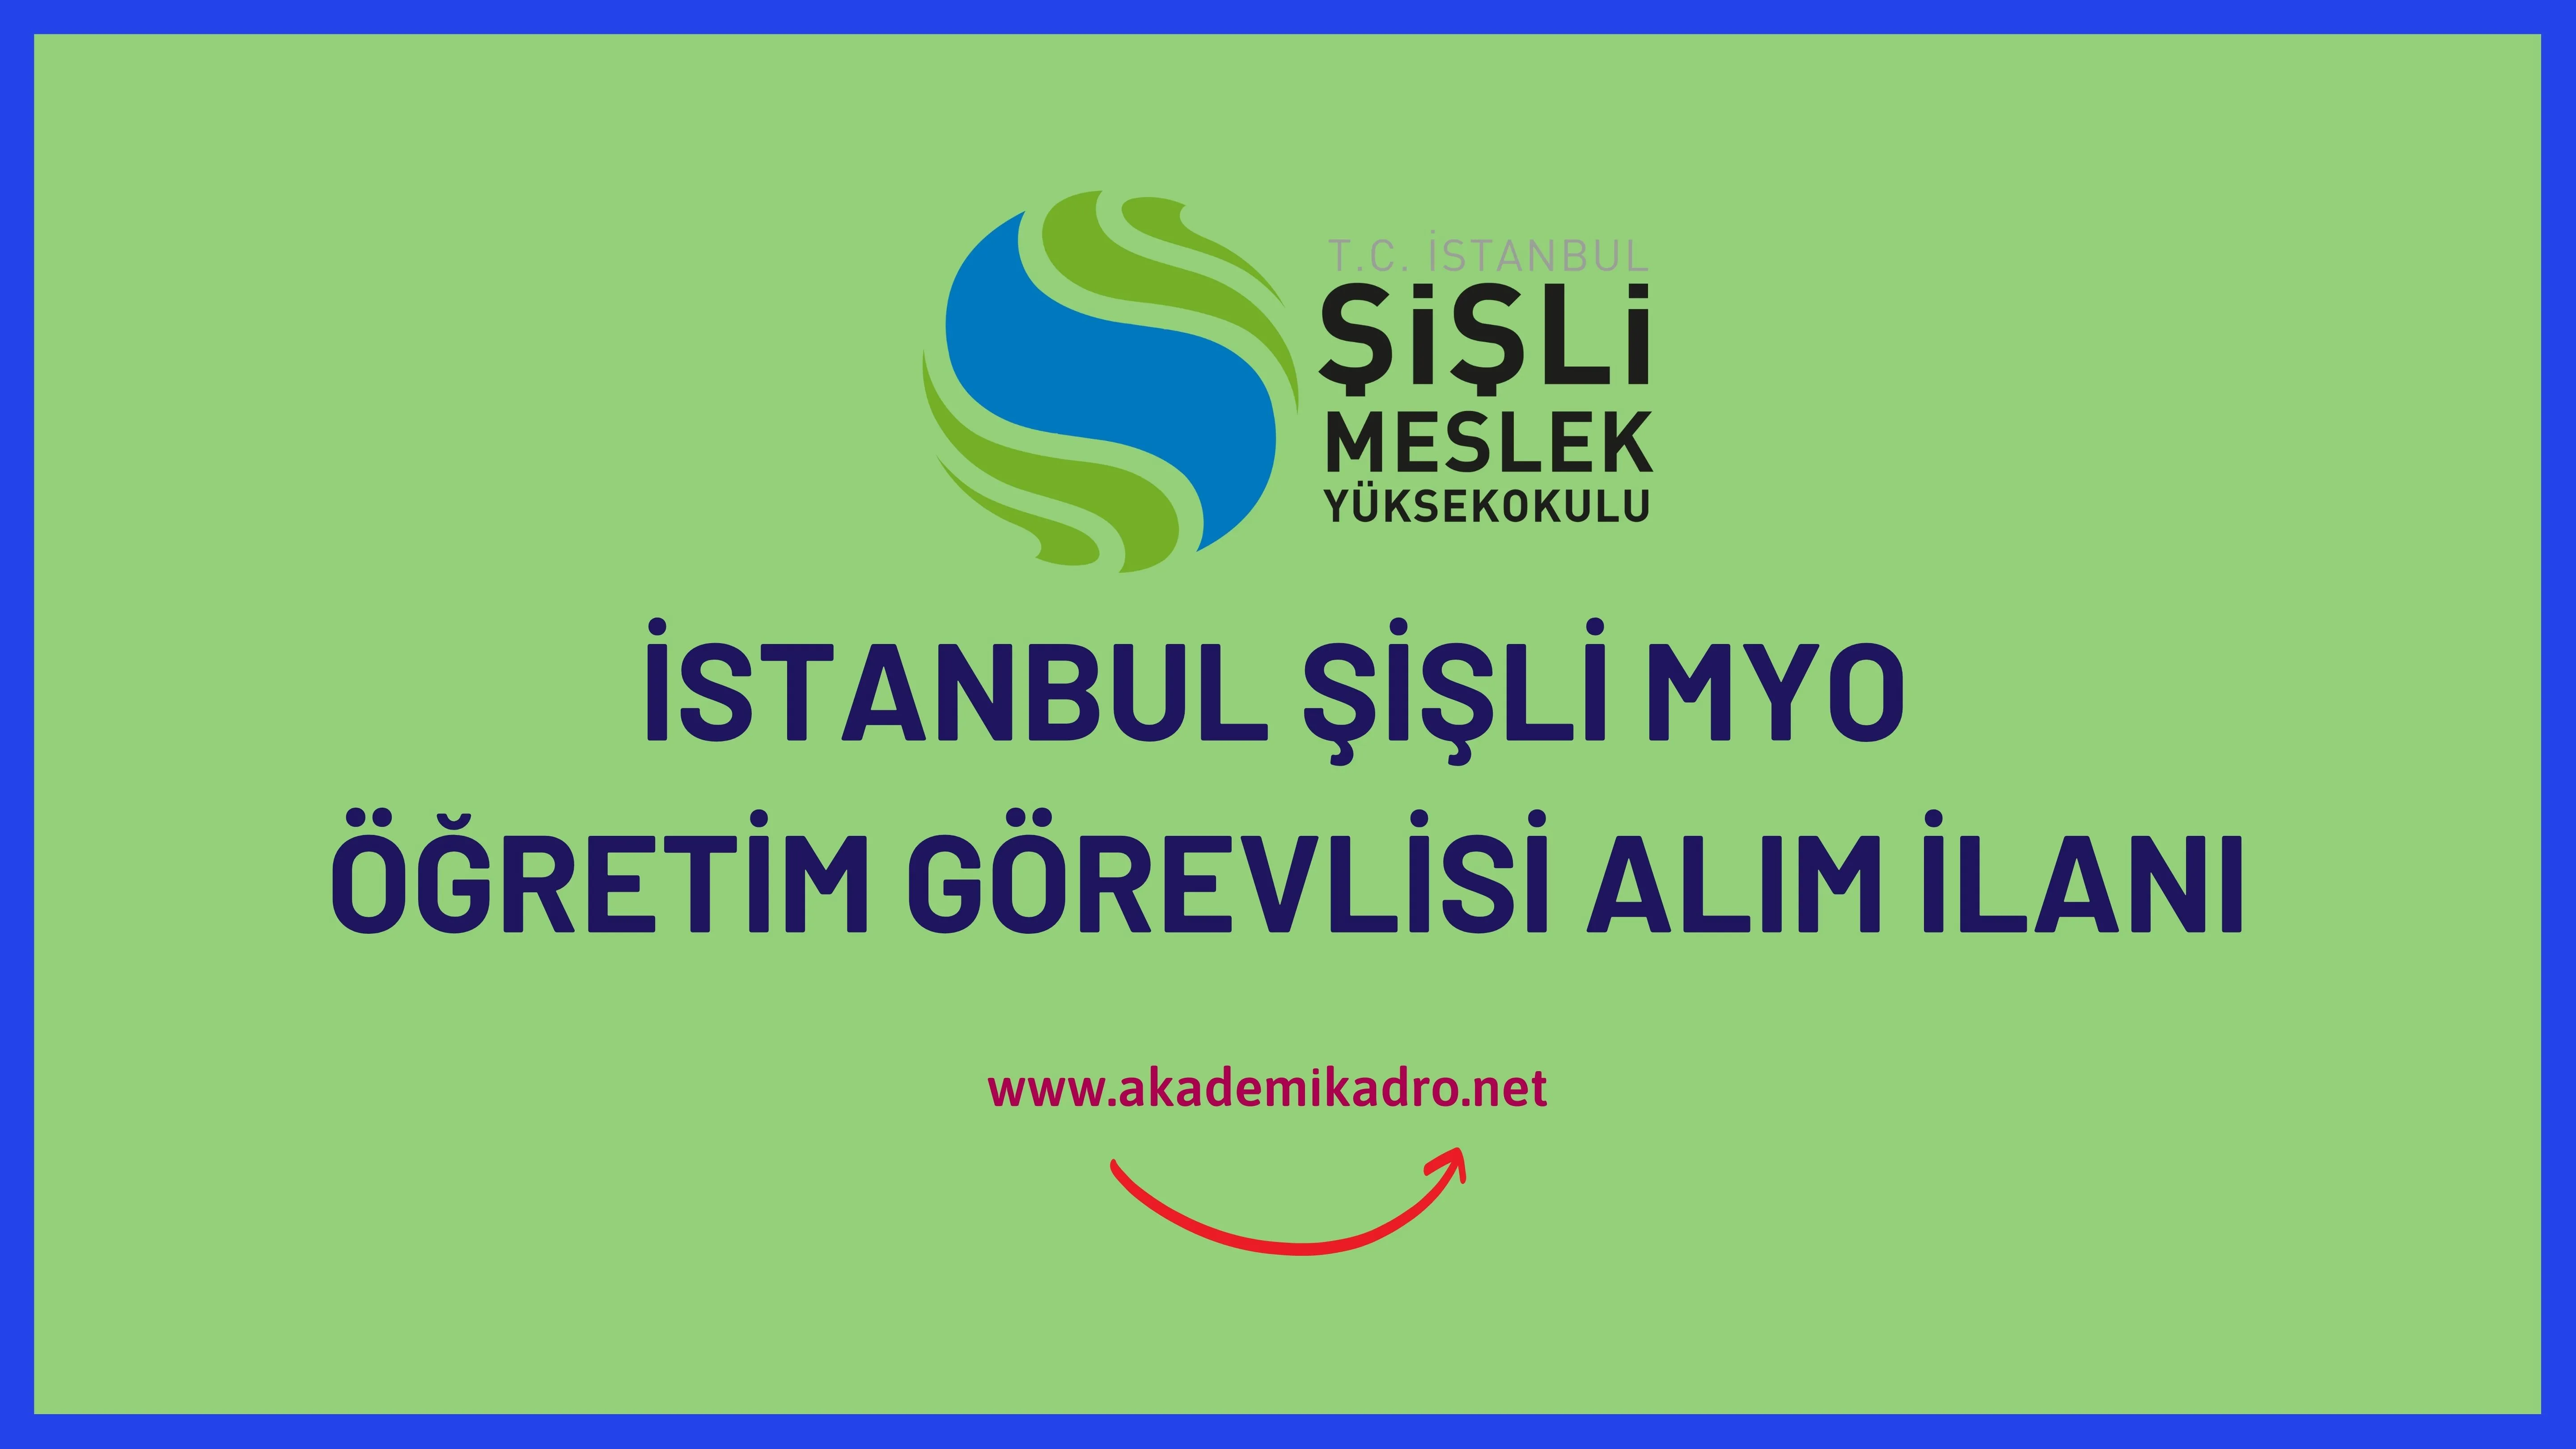 İstanbul Şişli Meslek Yüksekokulu 16 Öğretim Görevlisi alacaktır. Son başvuru tarihi 02 Ocak 2023